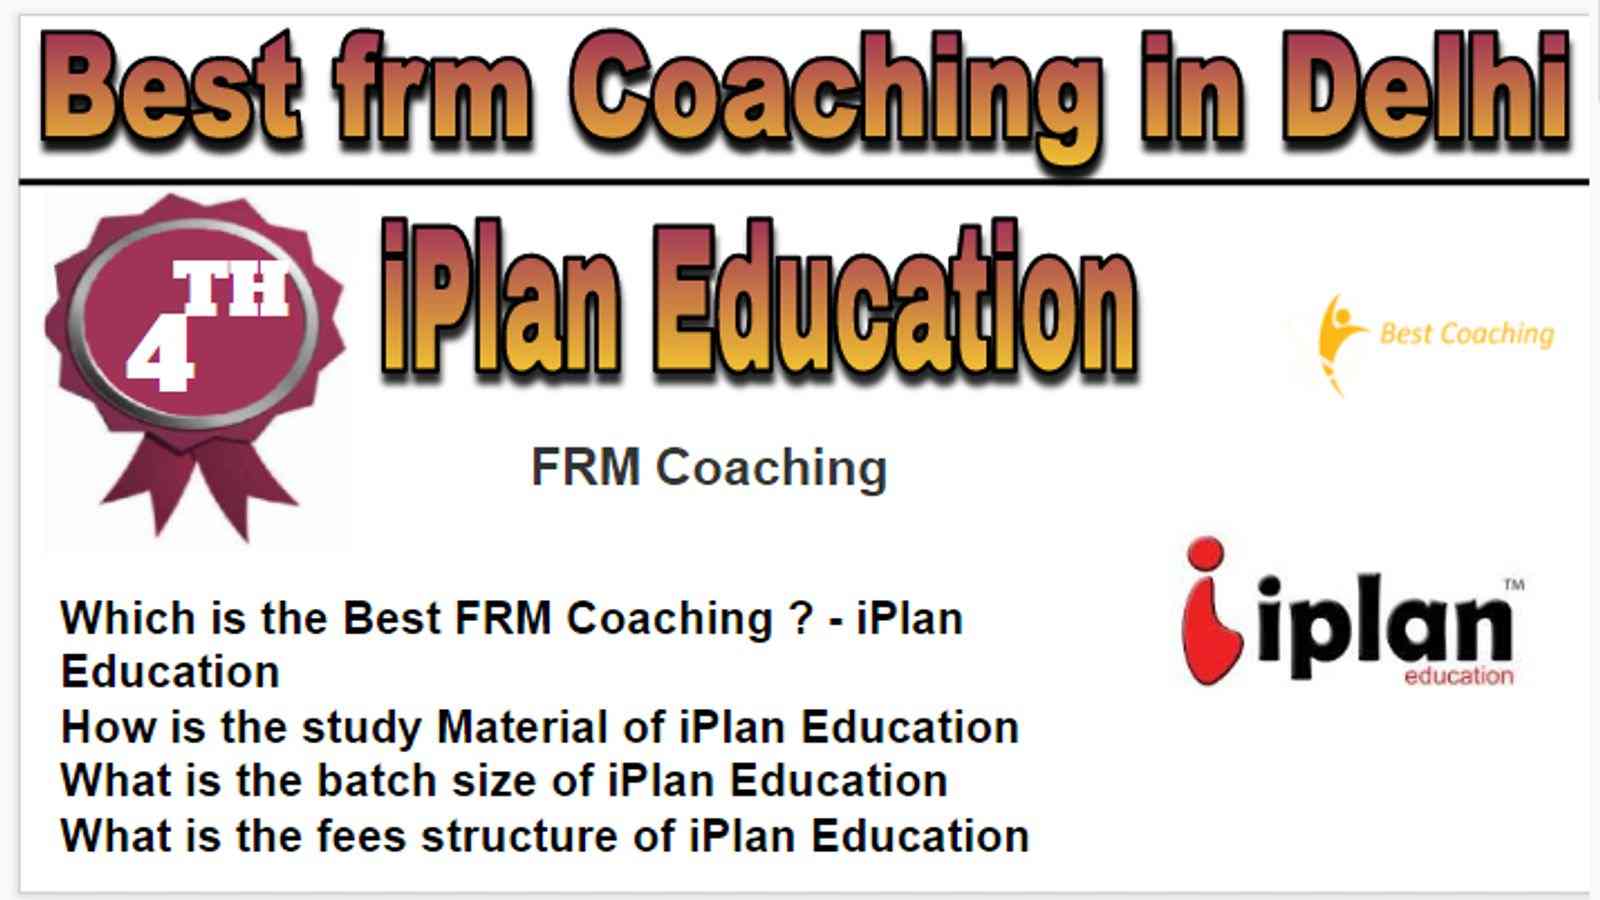 Rank 4 Best frm Coaching in Delhi